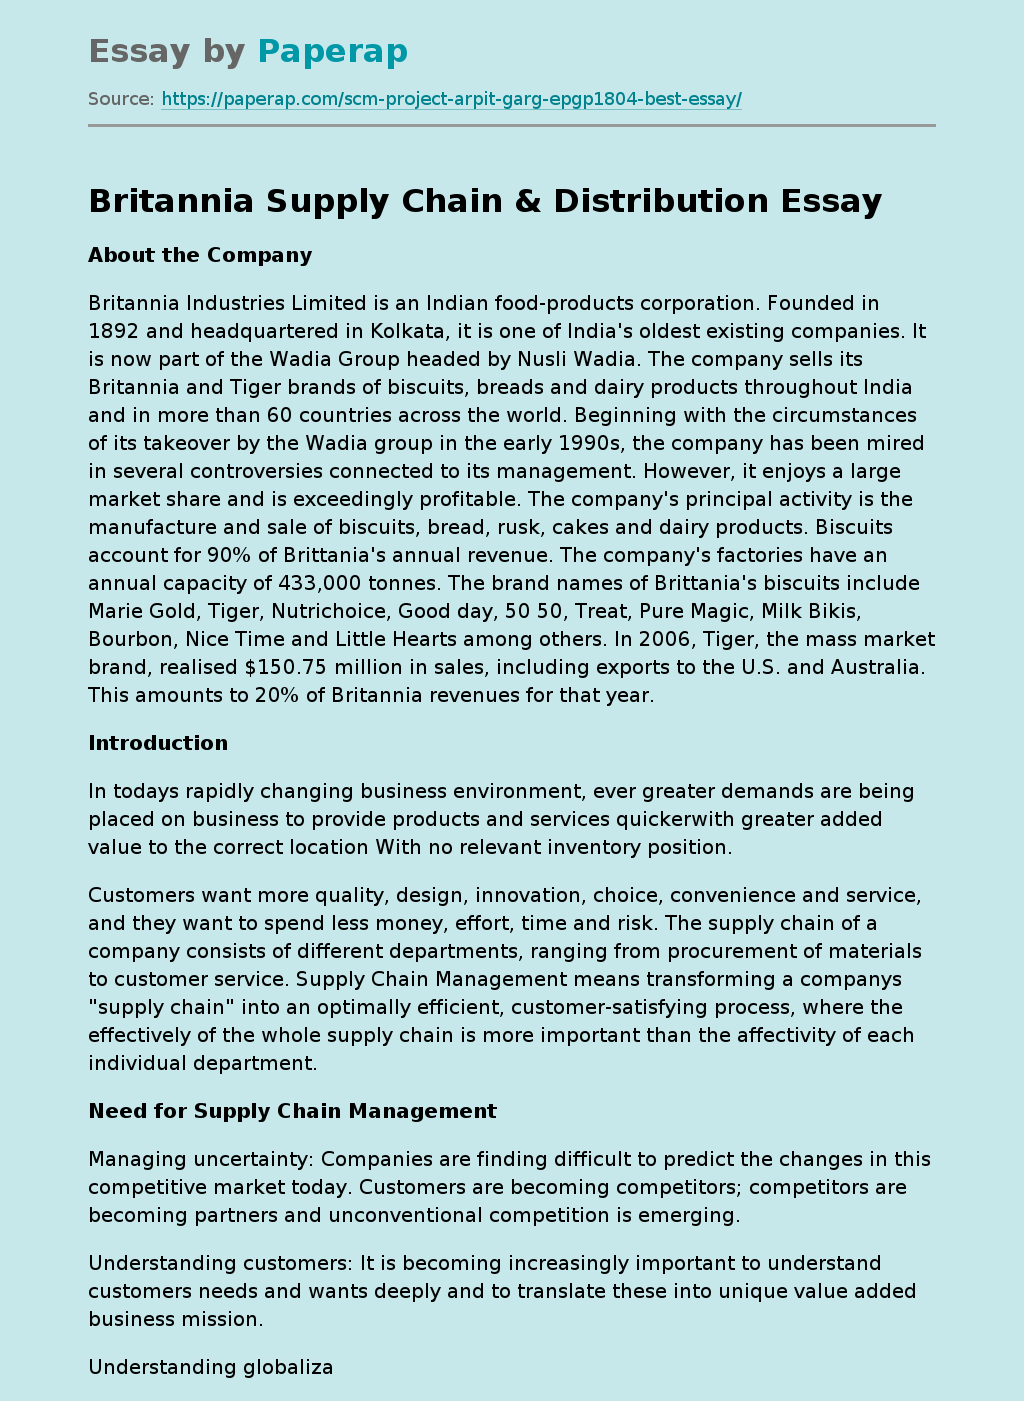 Britannia Supply Chain & Distribution